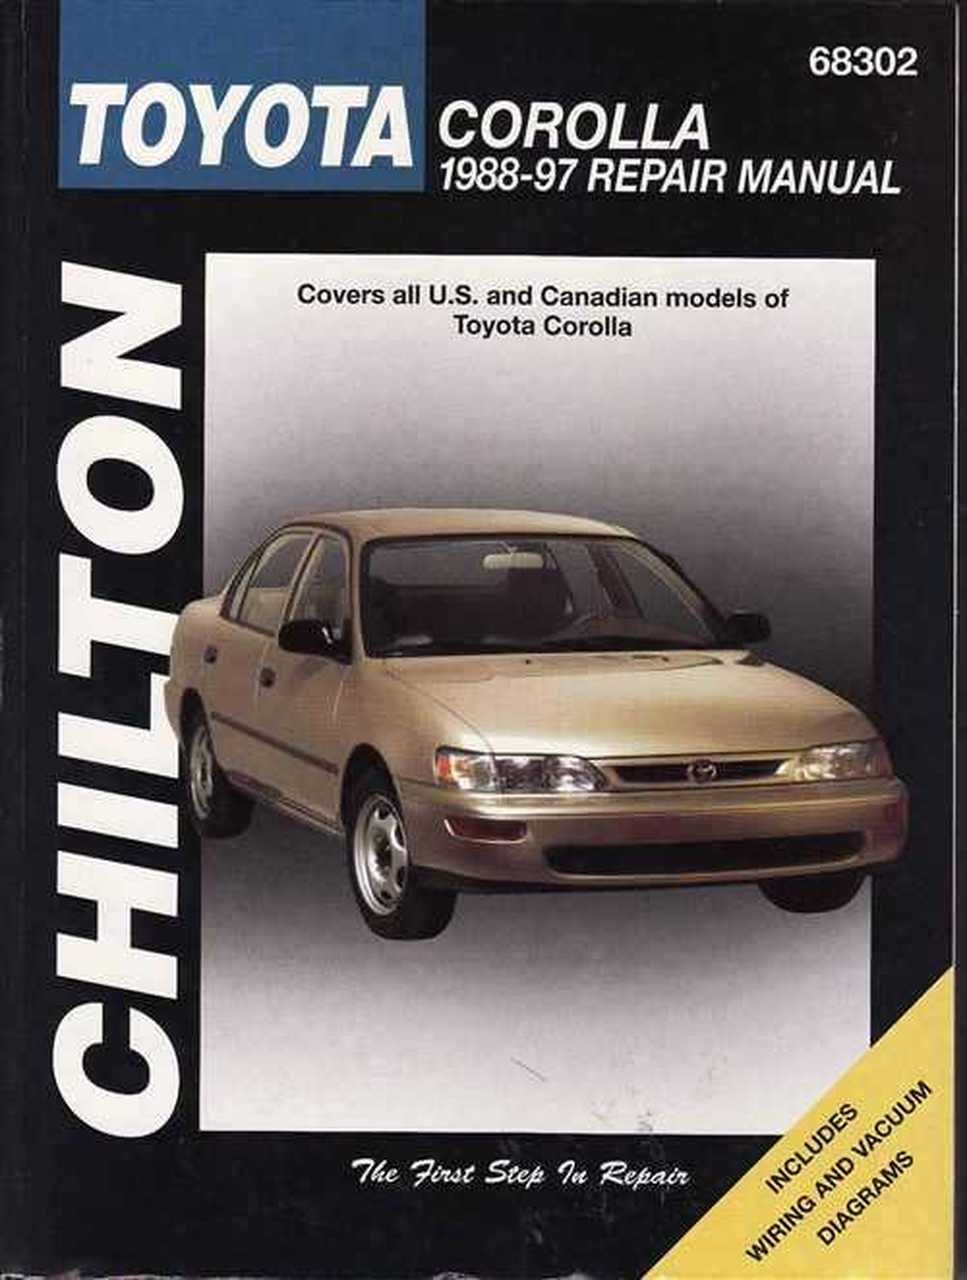 Toyota corolla 2003 manual